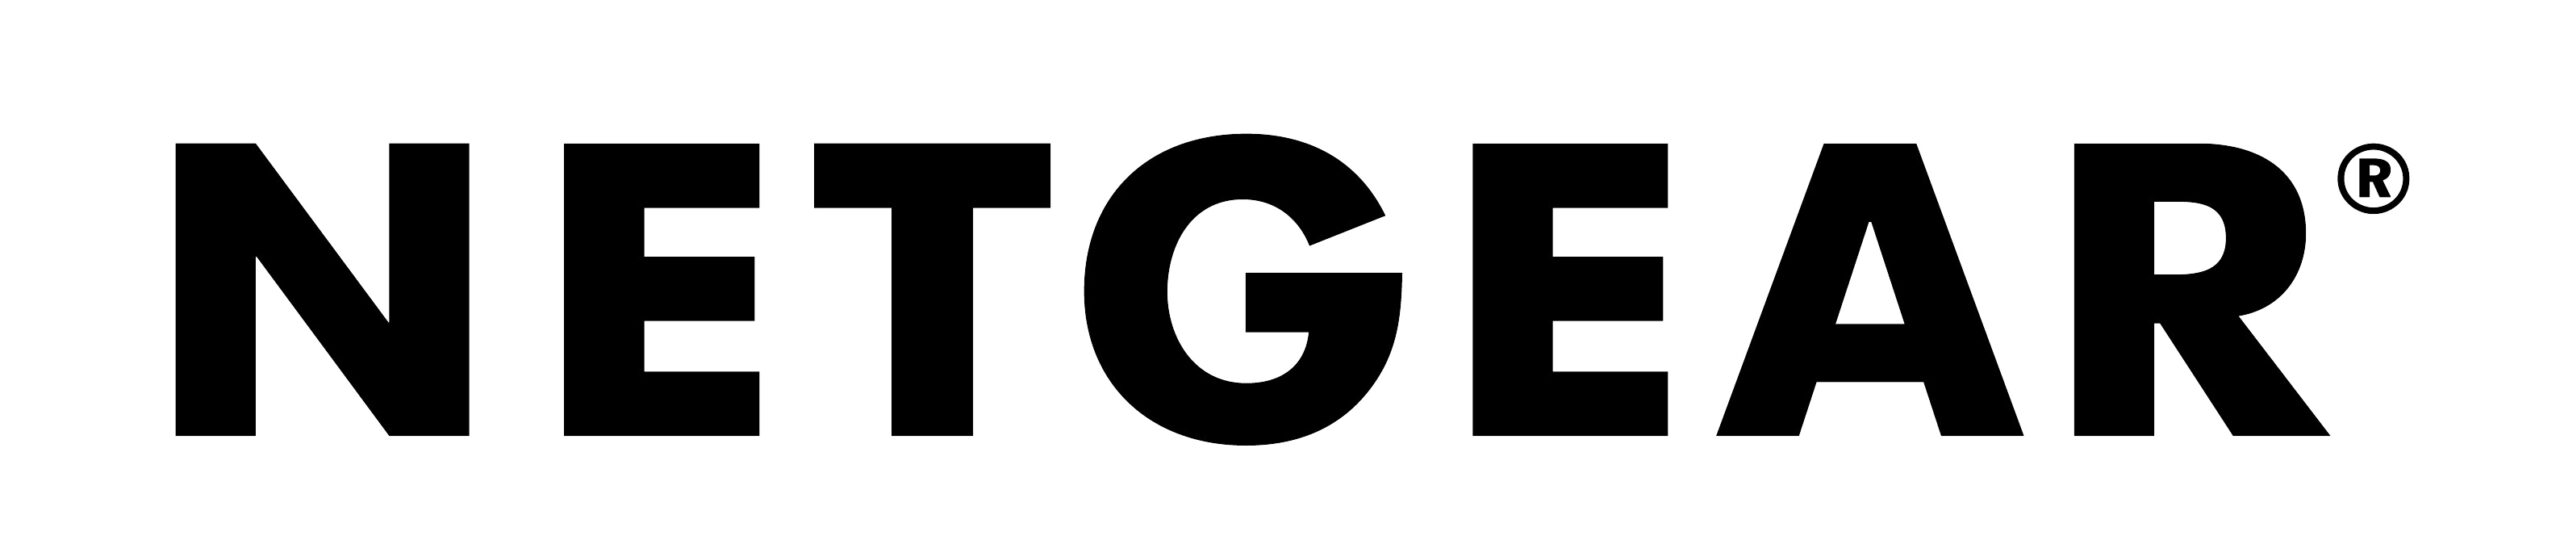 netgear_logo